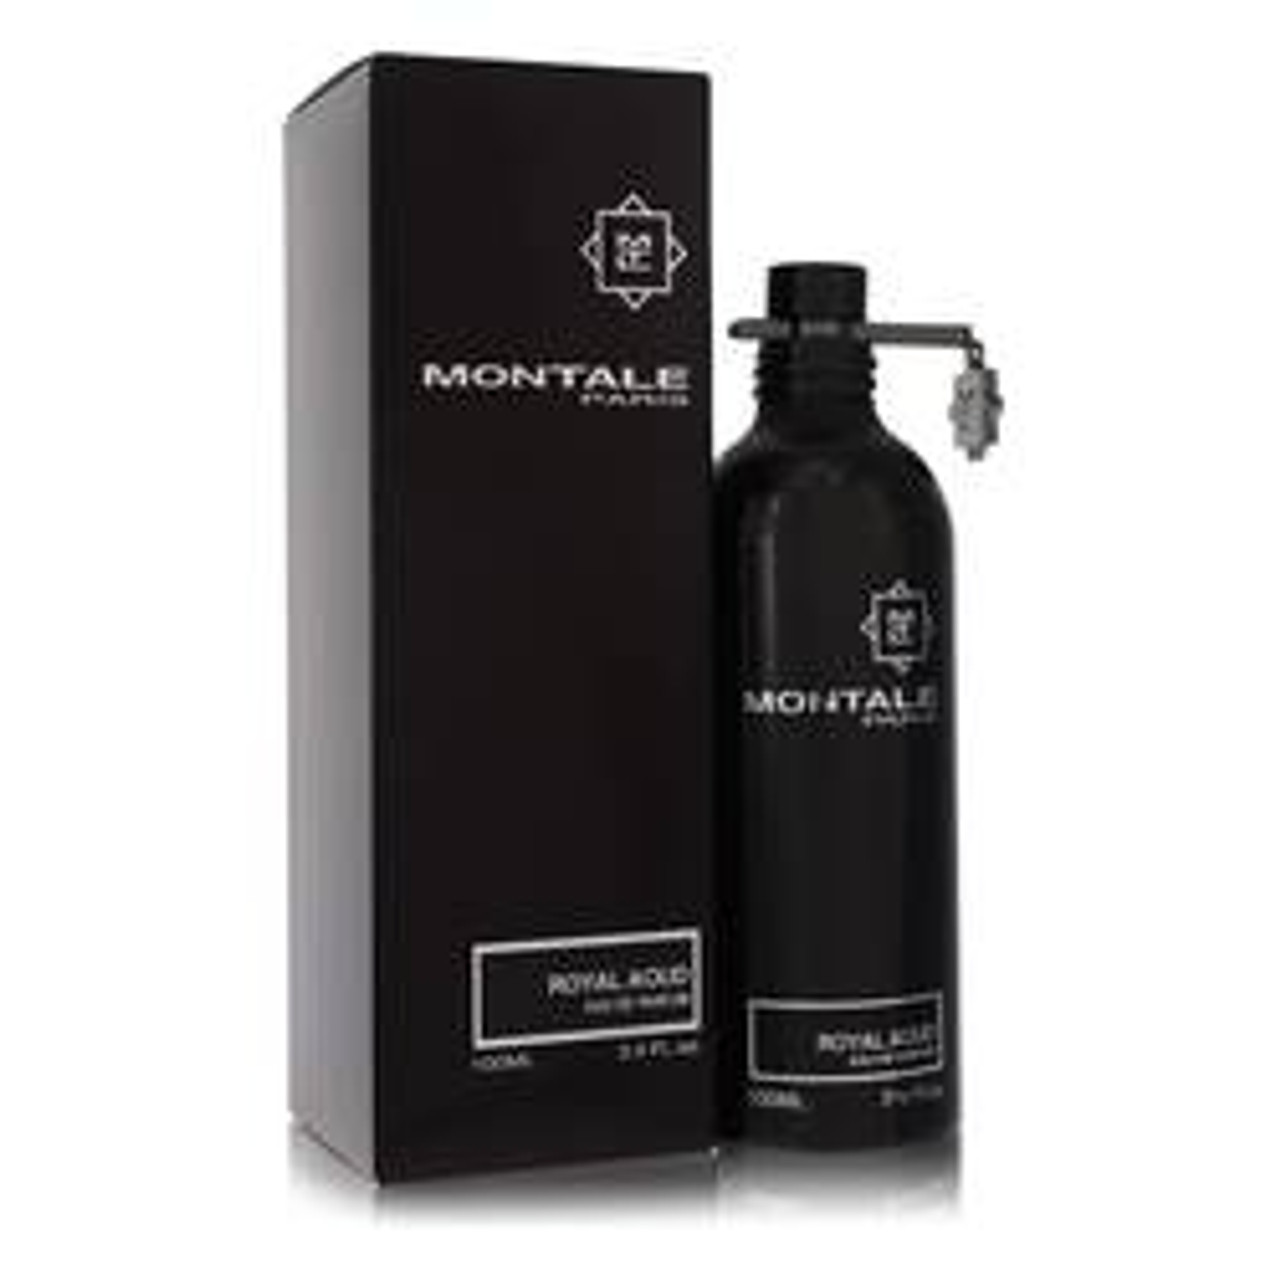 Montale Royal Aoud Perfume By Montale Eau De Parfum Spray 3.3 oz for Women - *Pre-Order